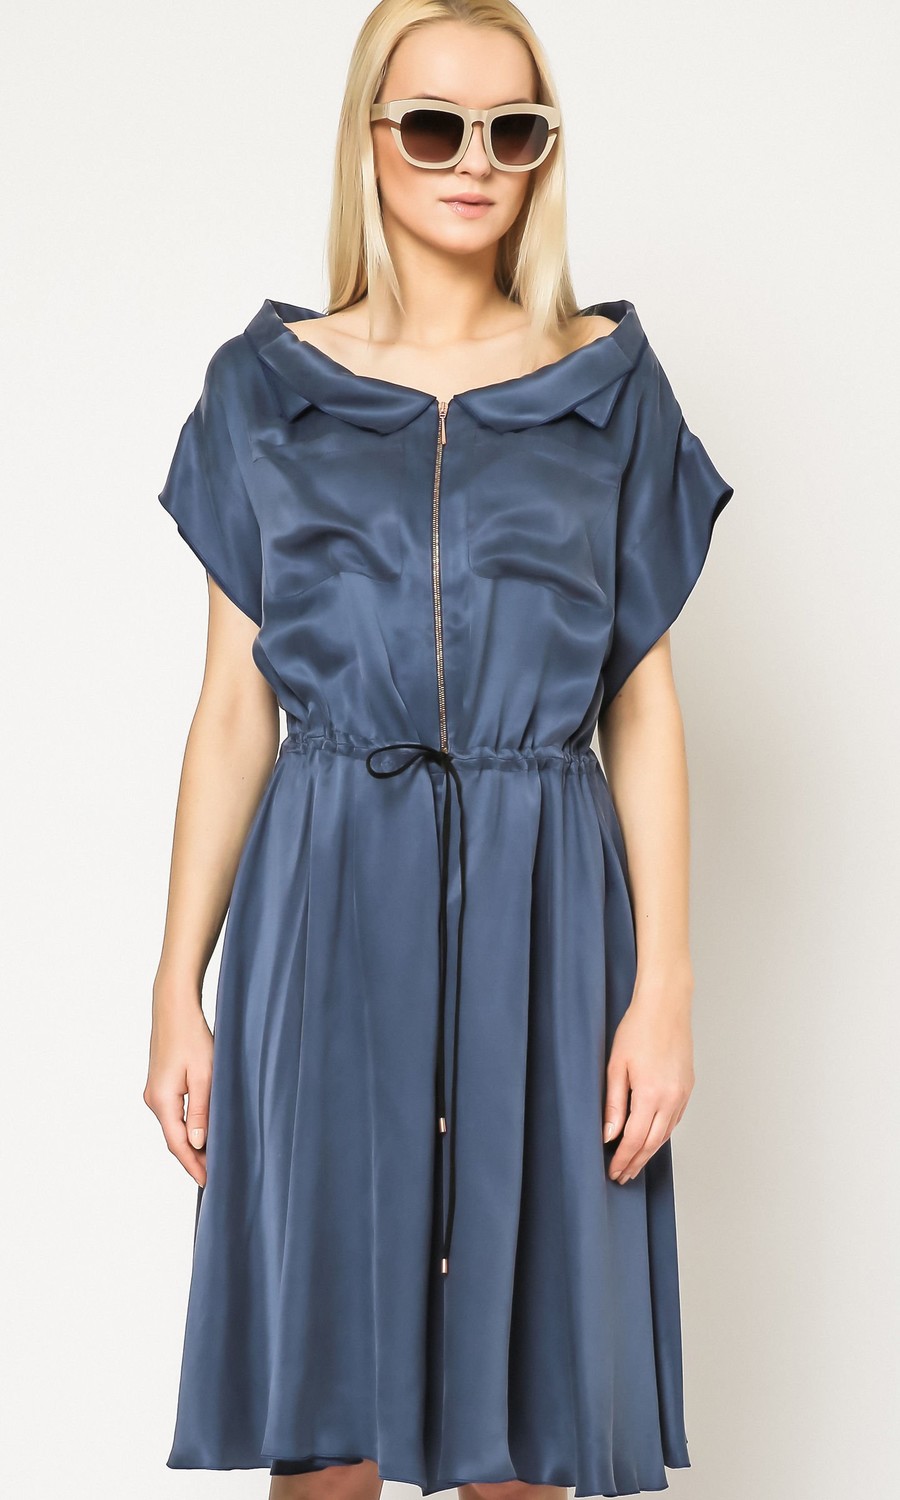 Deni Cler Milano Woman's Dress W-DK-3235-63-61-55-1